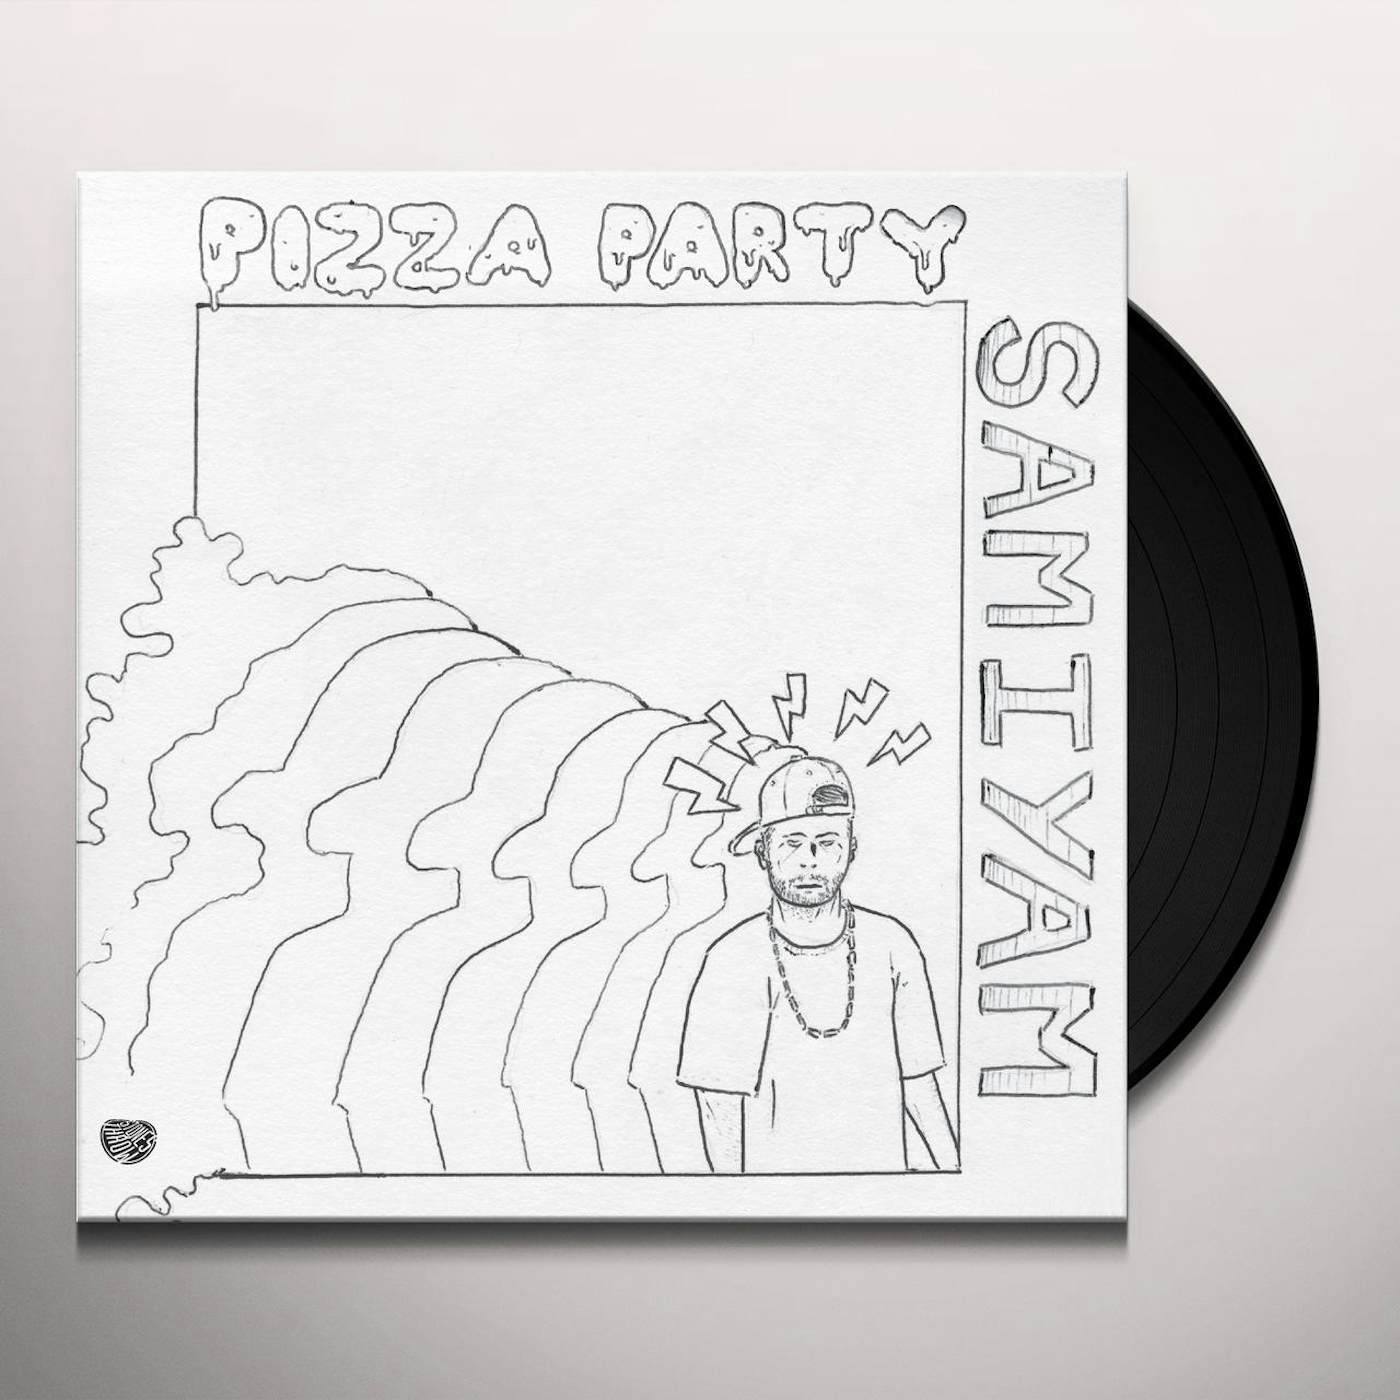 Samiyam Pizza Party Vinyl Record